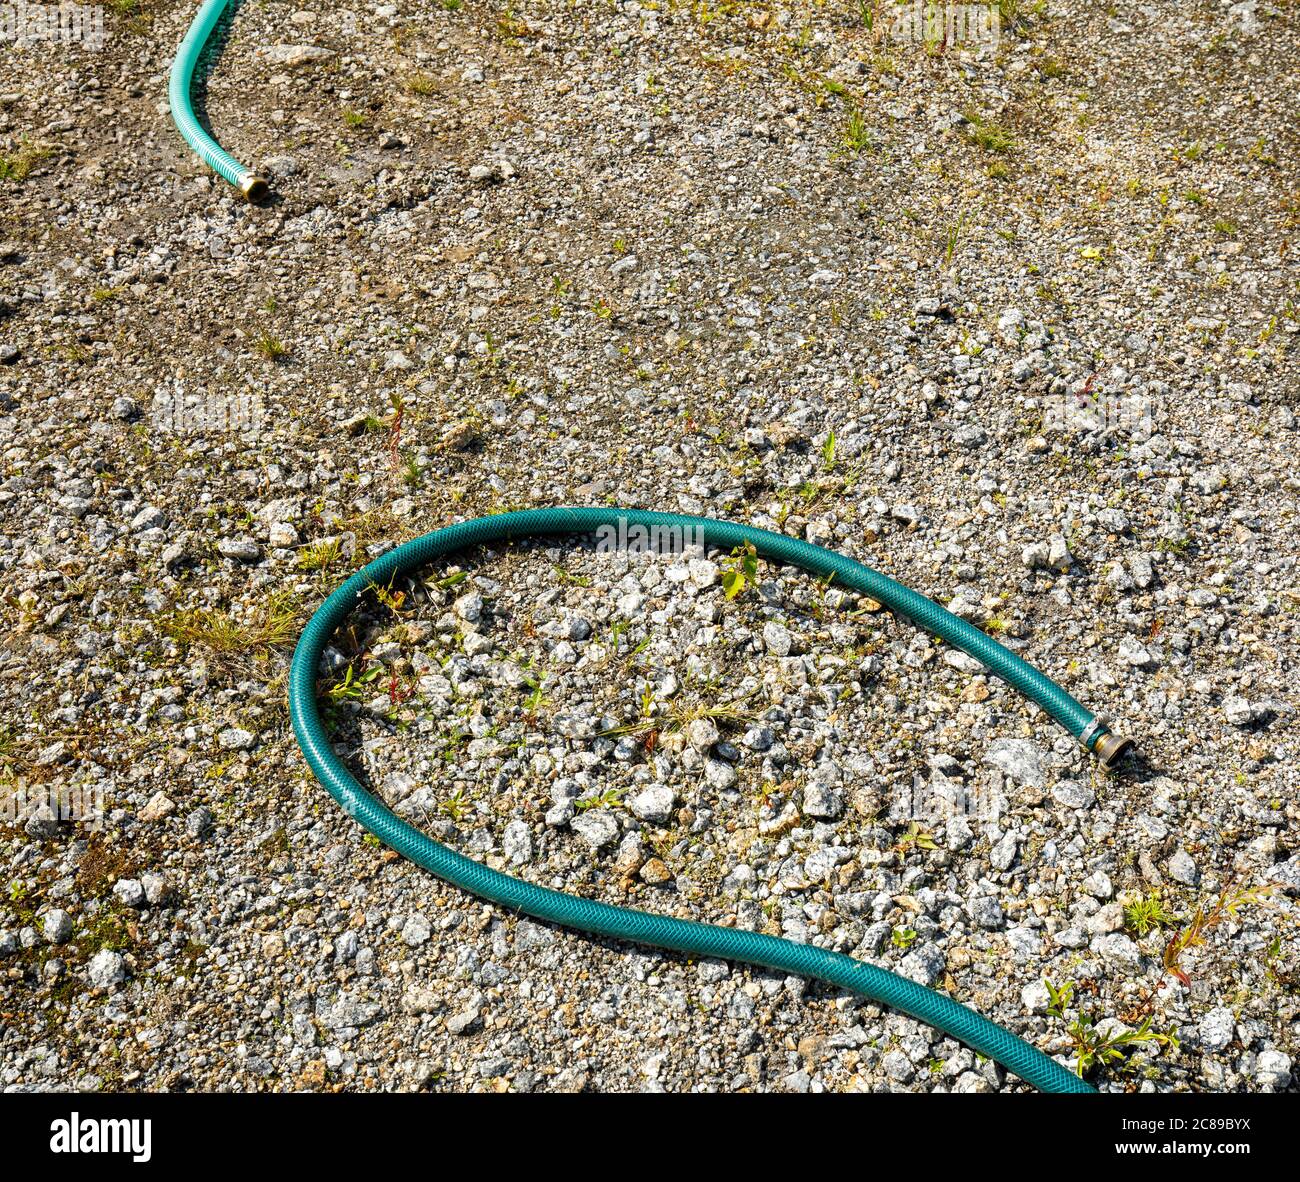 Zwei Enden der abgeklemmten, unterschiedlich farbigen grünen Wasserschläuche, die auf dem Boden liegen Stockfoto